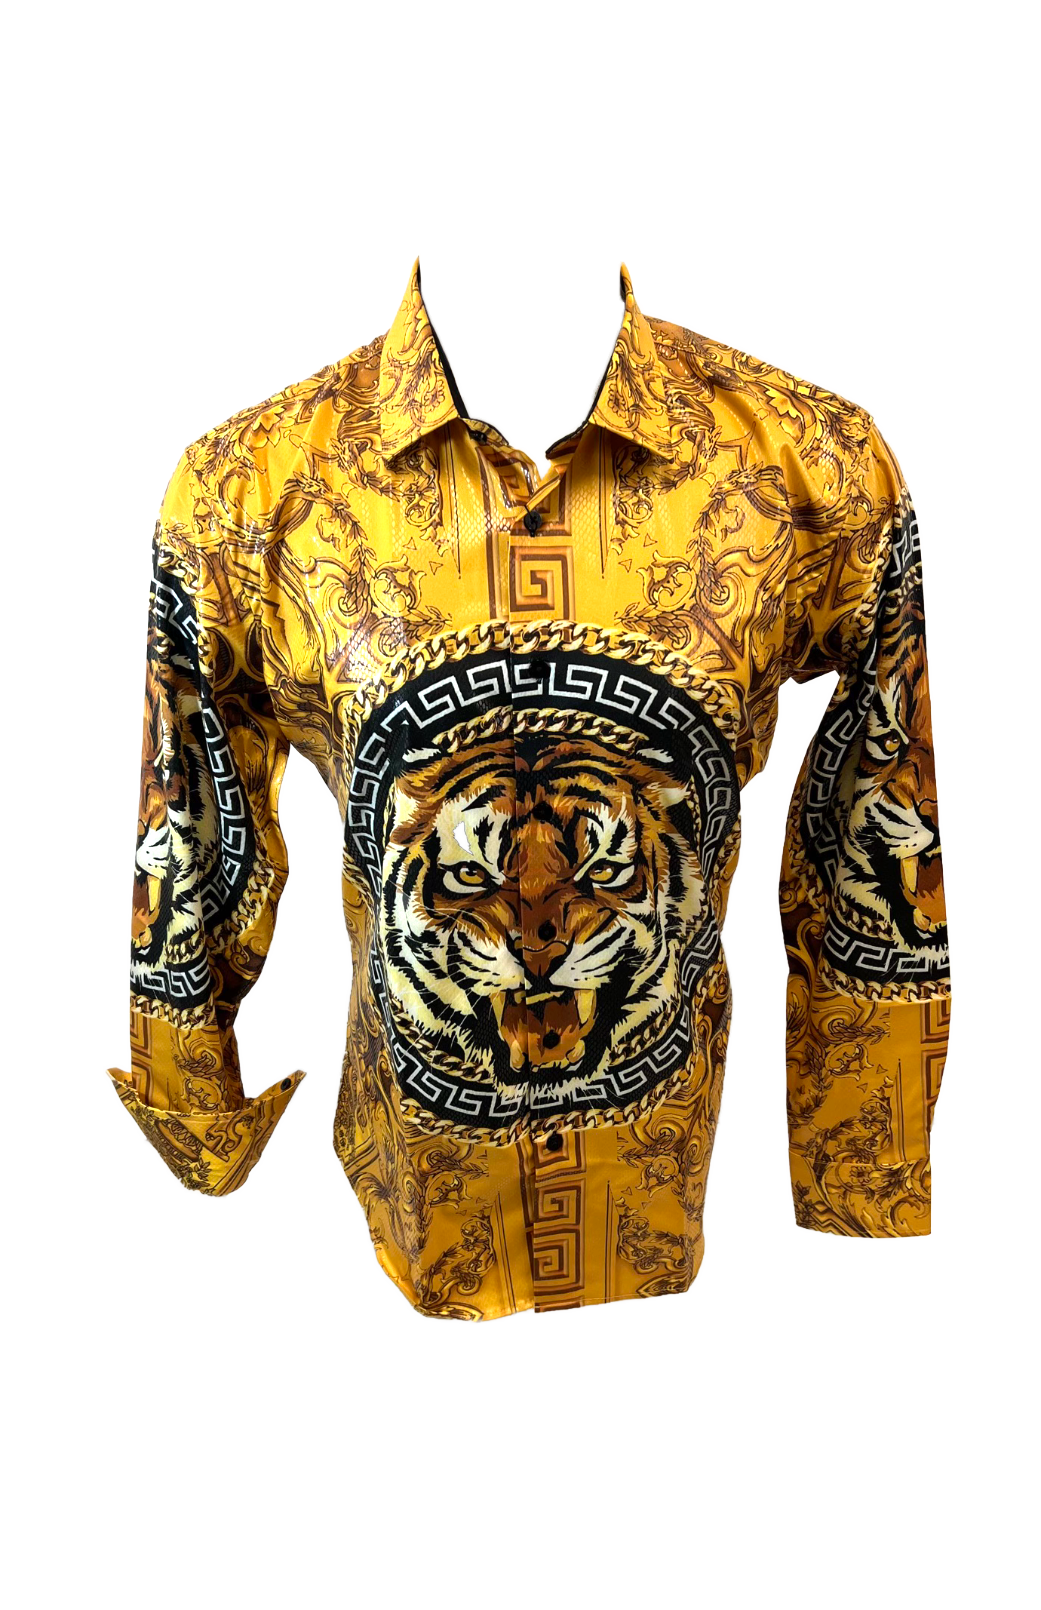 Men's Long Sleeve Button Down Dress Shirt Roar Tiger Golden Black White Gold Lion